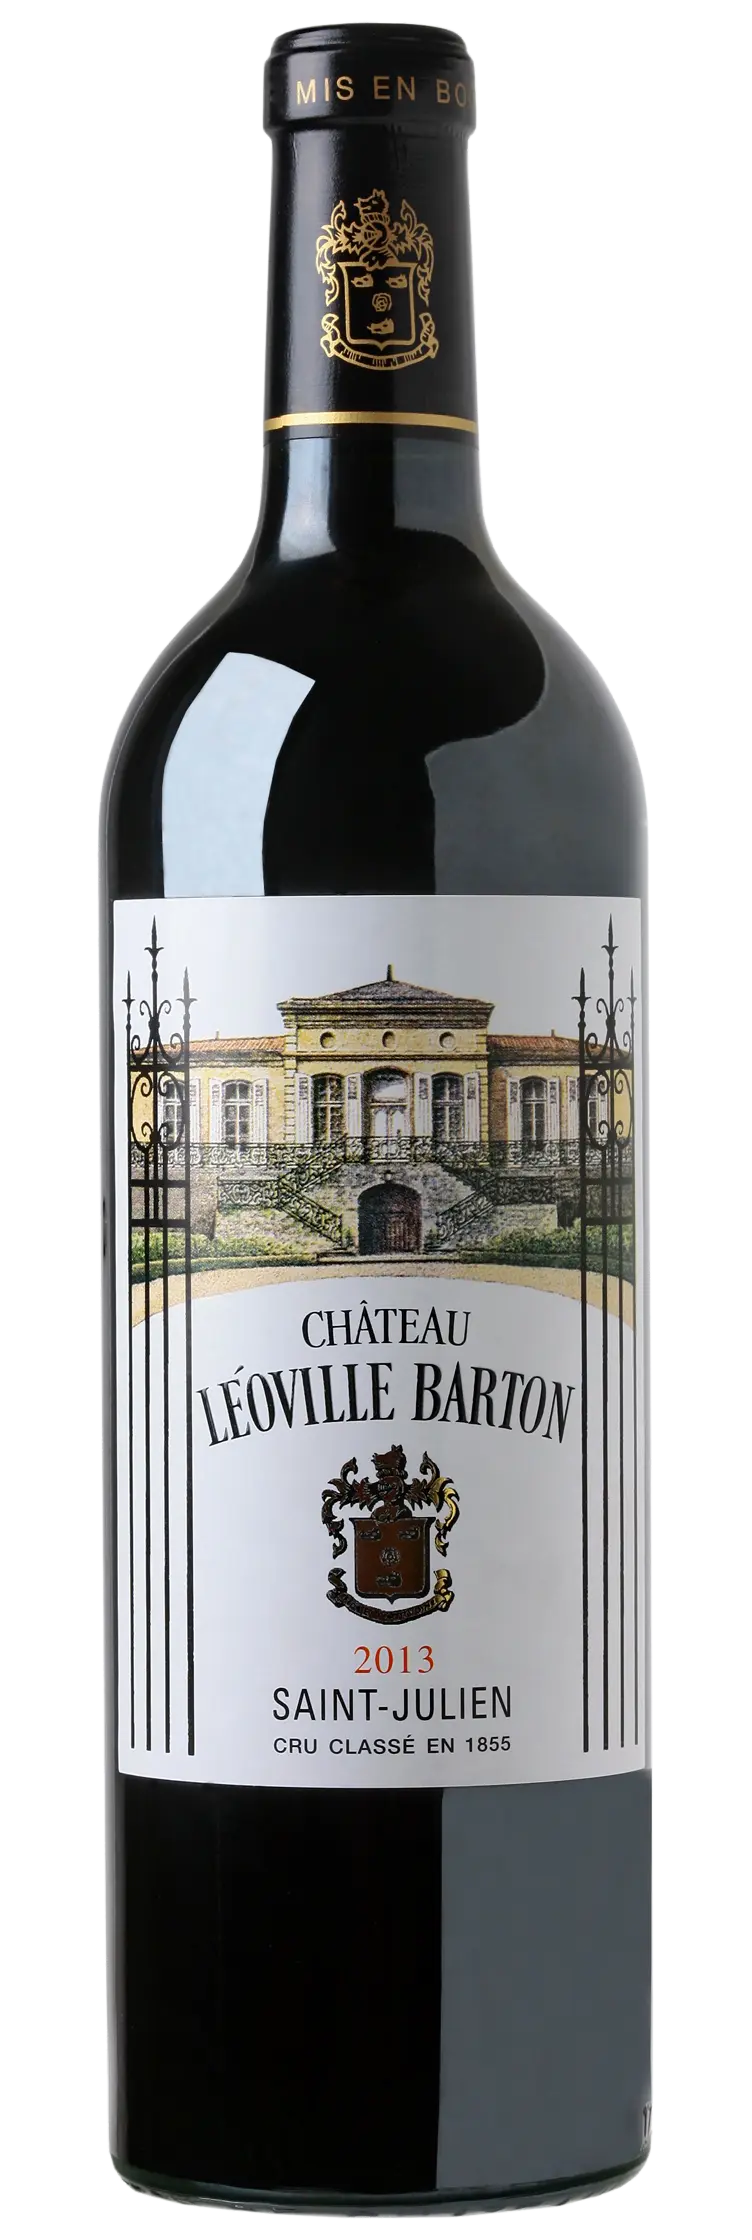 Chateau Leoville Barton 2013 (1x75cl) - TwoMoreGlasses.com